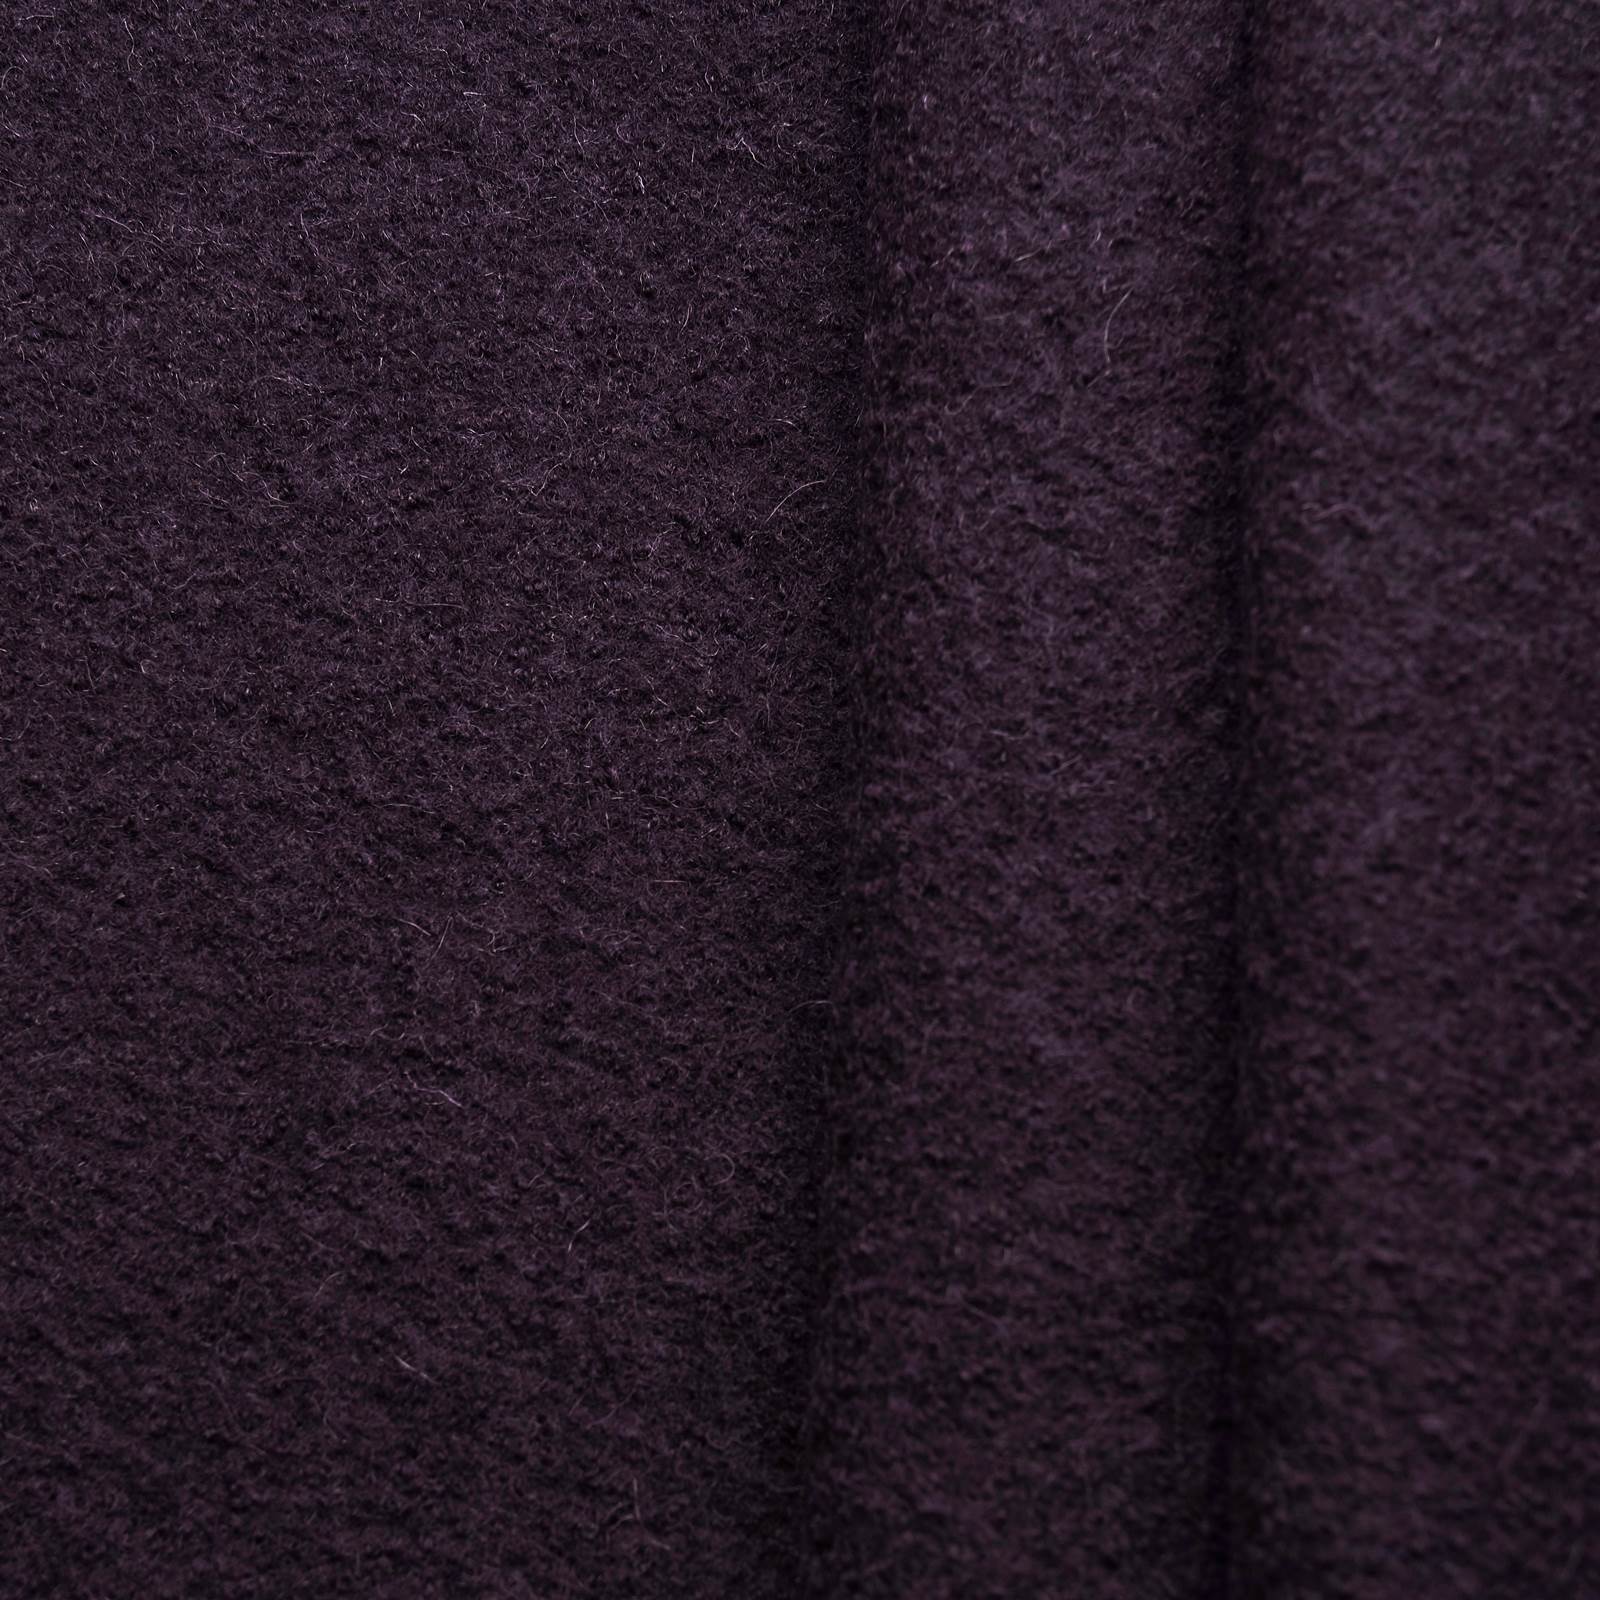 FAVORIT Walkloden - boiled wool / loden - dark purple